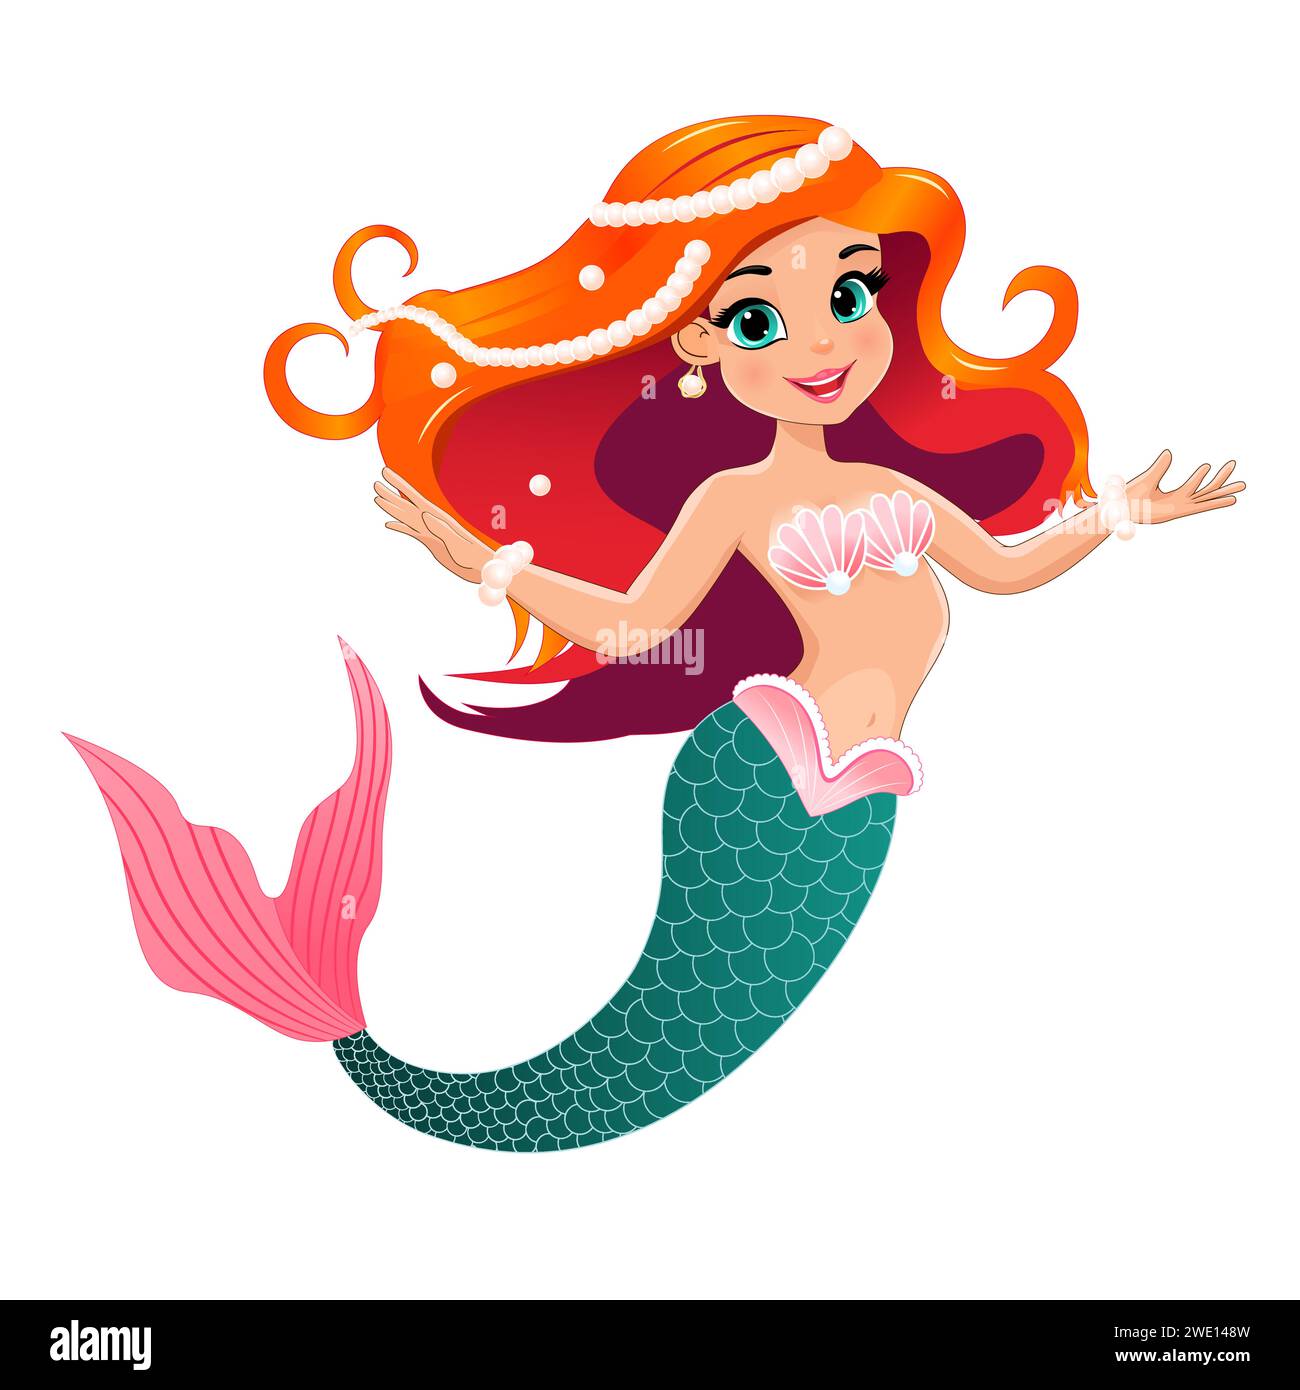 Cartoni animati, bellissima sirena con capelli rossi decorati con perle. Sirena su sfondo bianco. Illustrazione Vettoriale